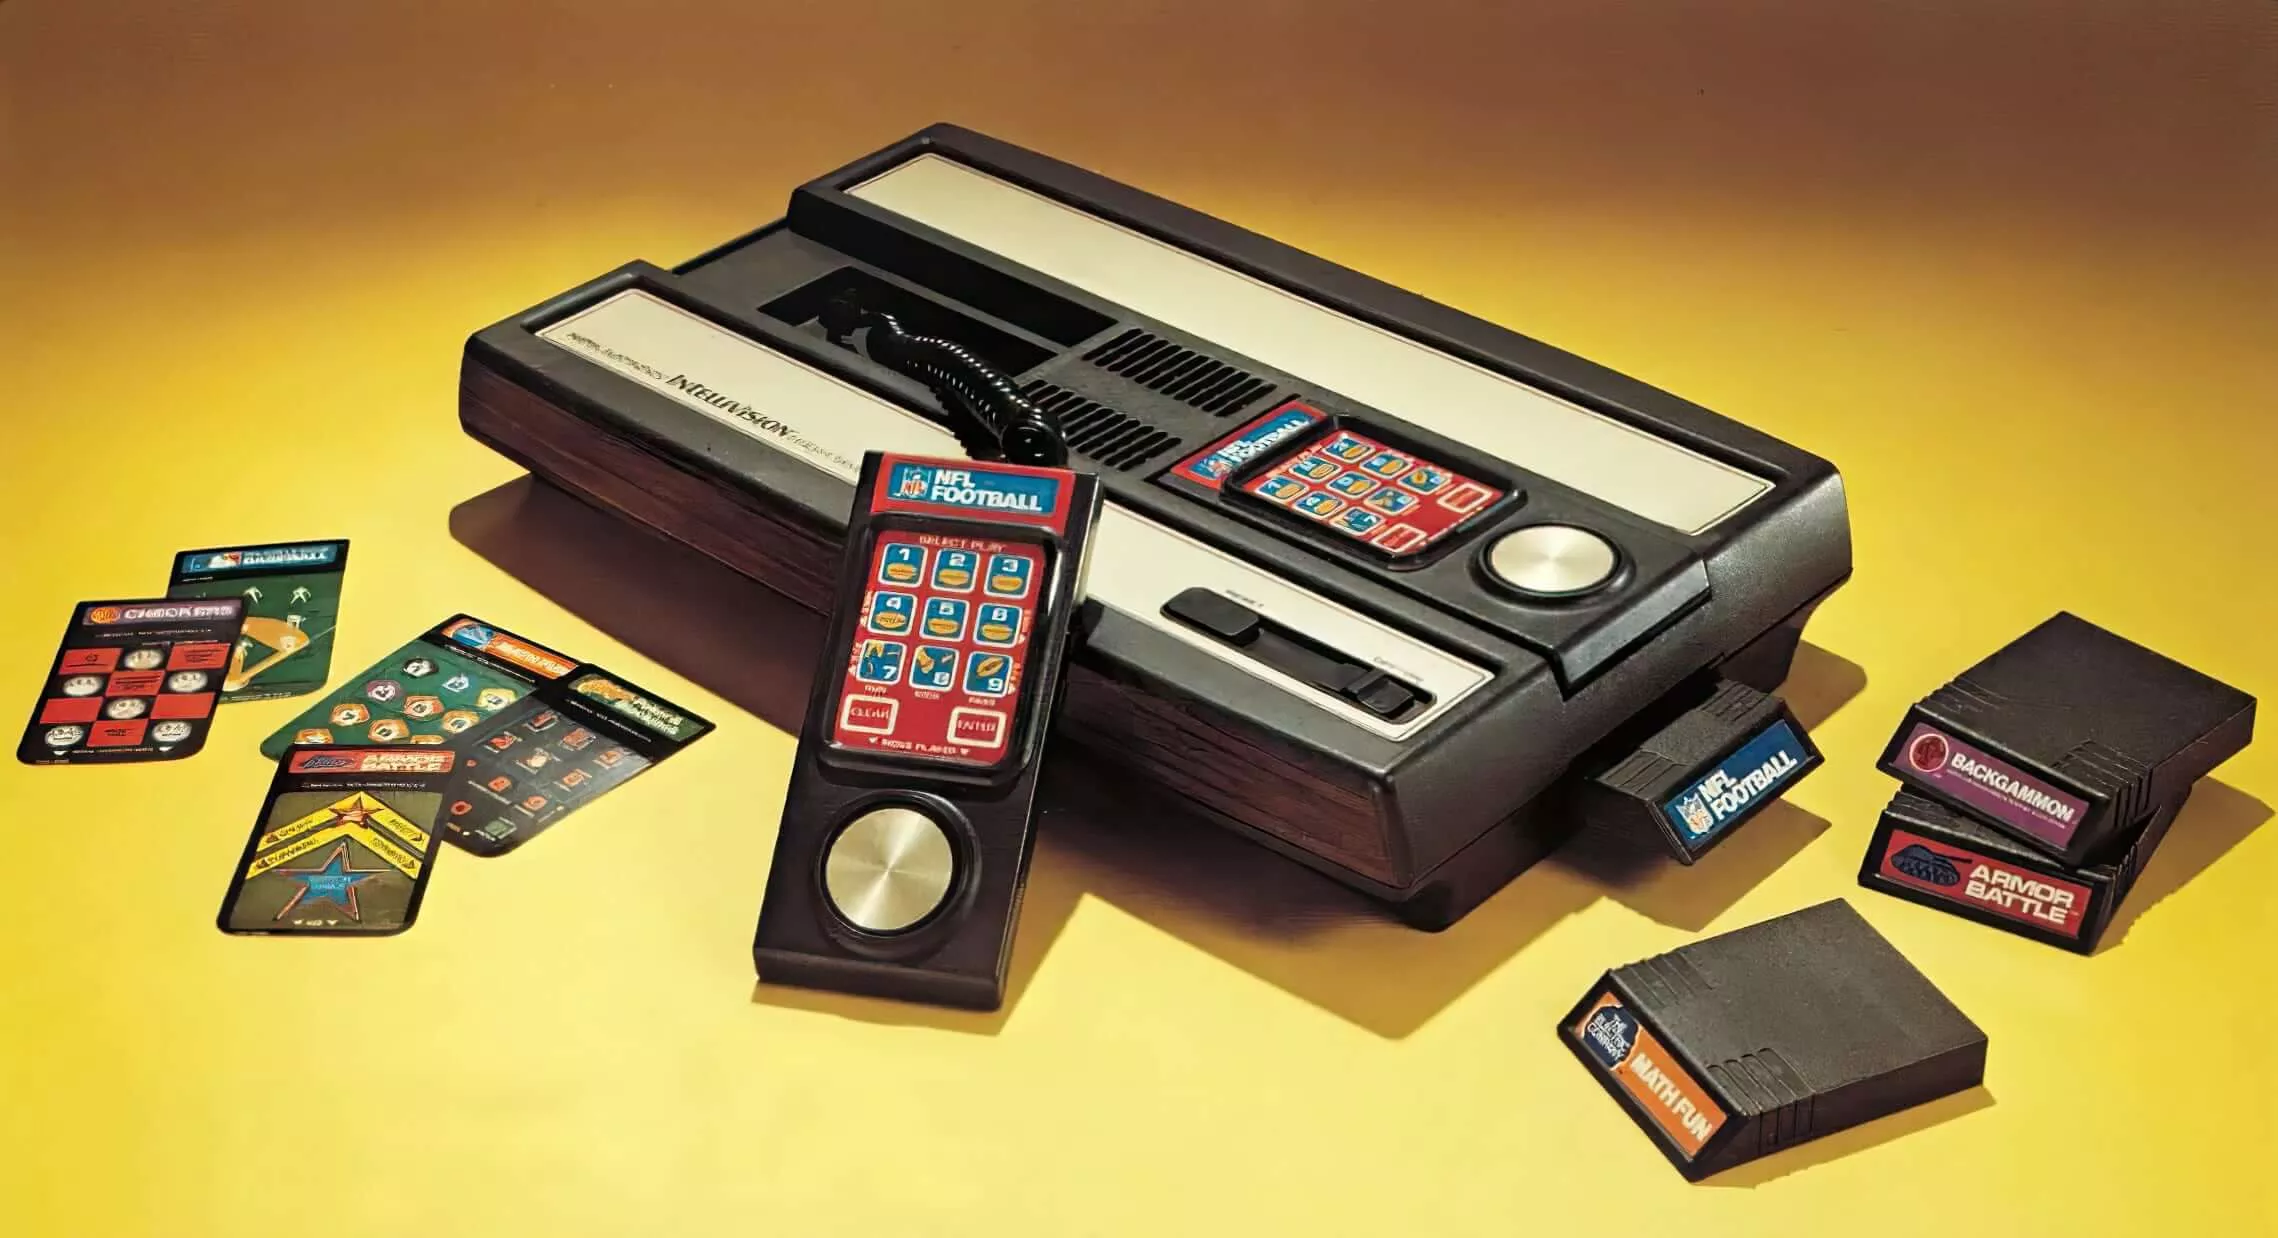 Atari compra Intellivision, poniendo fin a la guerra de consolas originales